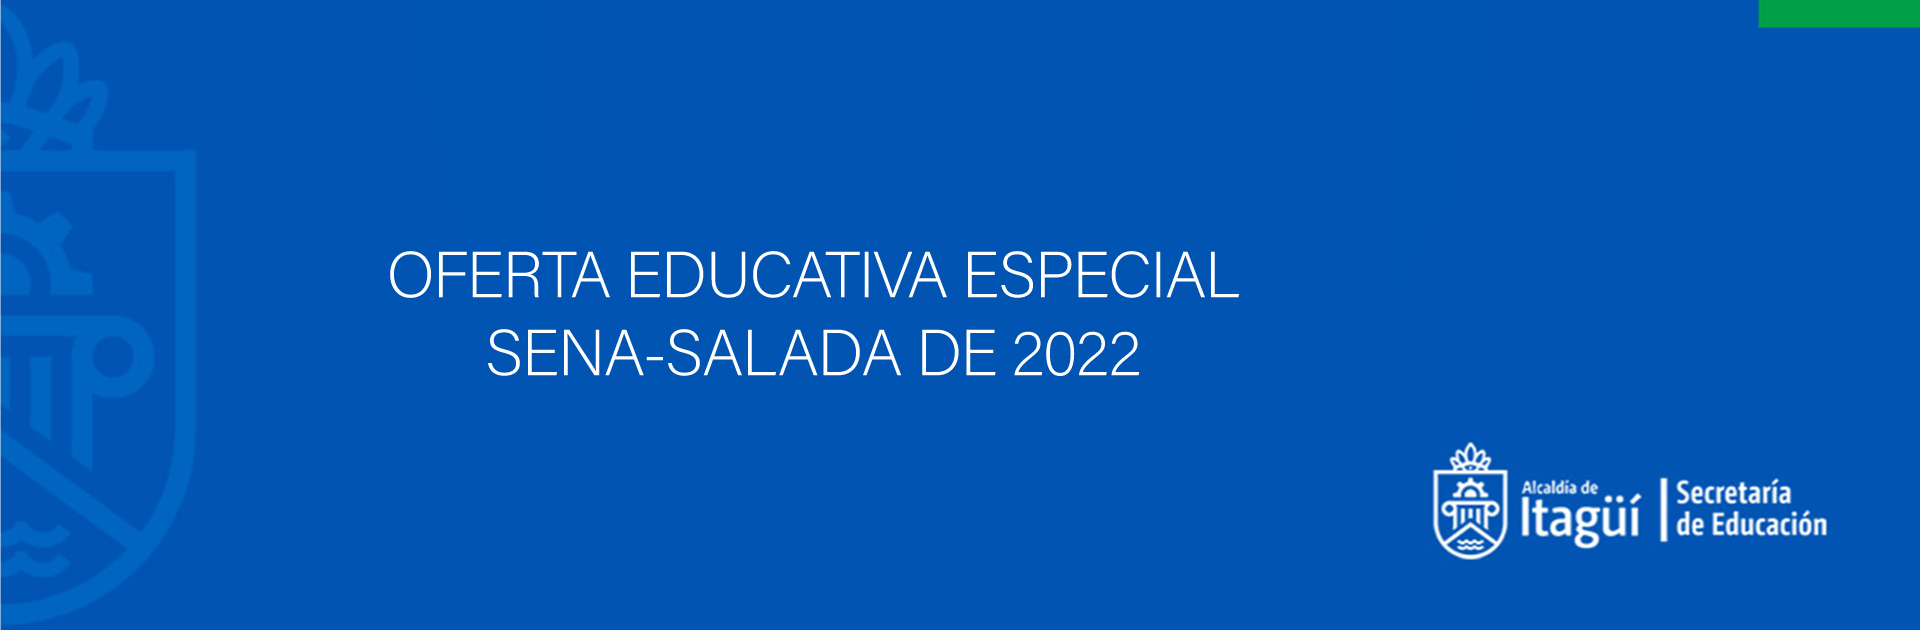 OFERTA EDUCATIVA ESPECIAL SENA-SALADA  2022